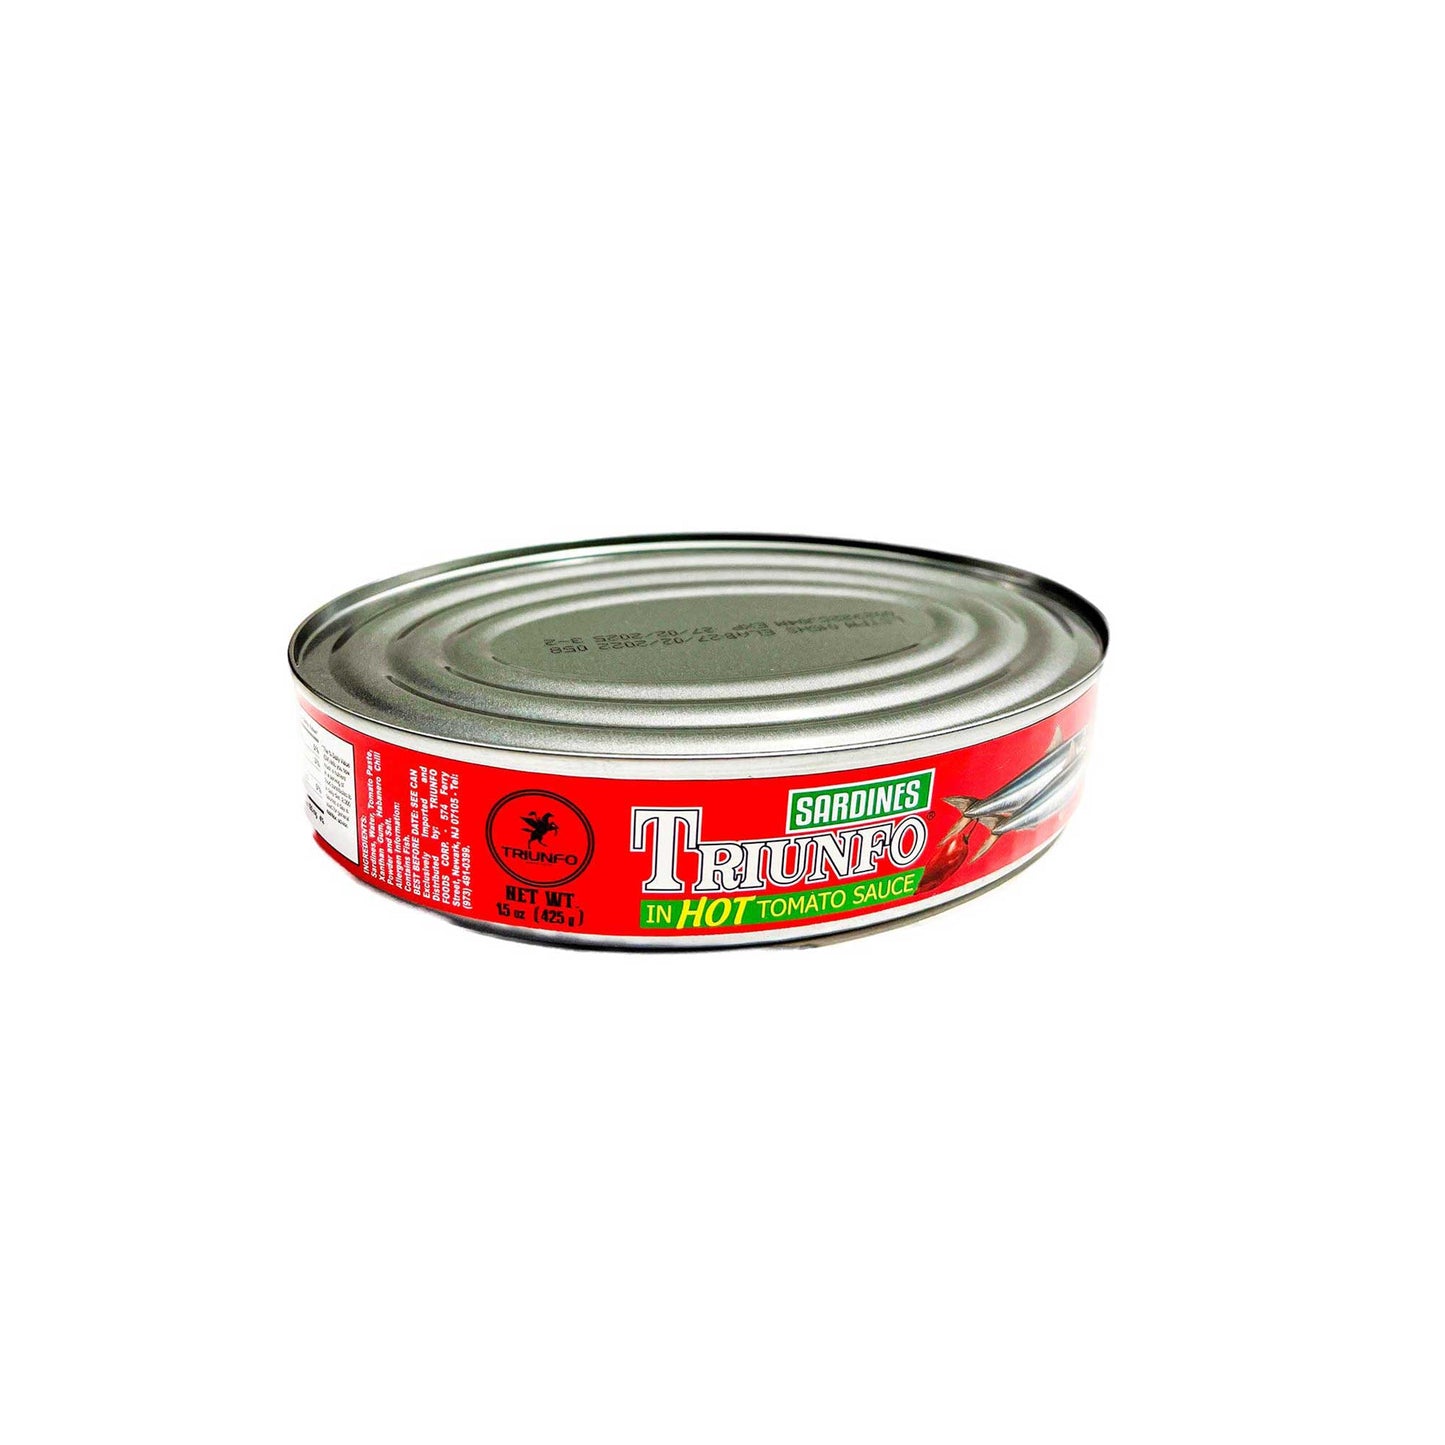 Triunfo sardines ovalk tomato spice